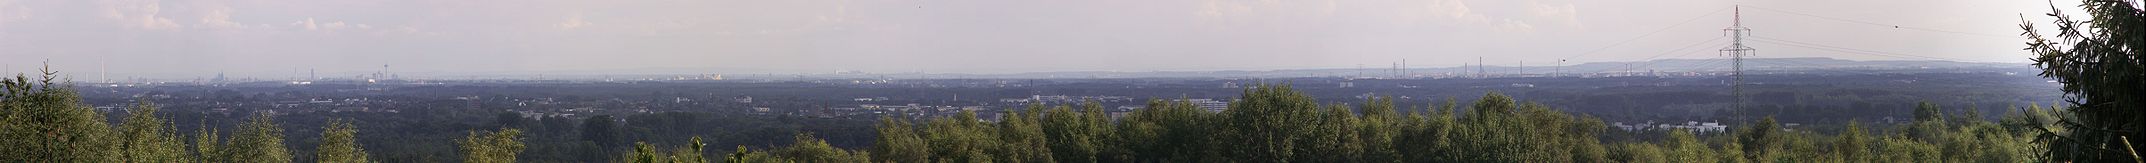 Die Kölner Bucht von Hochdahl aus gesehen. Links sind der Kölner Dom und der Fernmeldeturm Colonius zu erkennen, am rechten Bildrand das Bayerwerk Dormagen und im Hintergrund links die Eifel, die Ville in der Mitte und Braunkohleabraumhalden rechts.